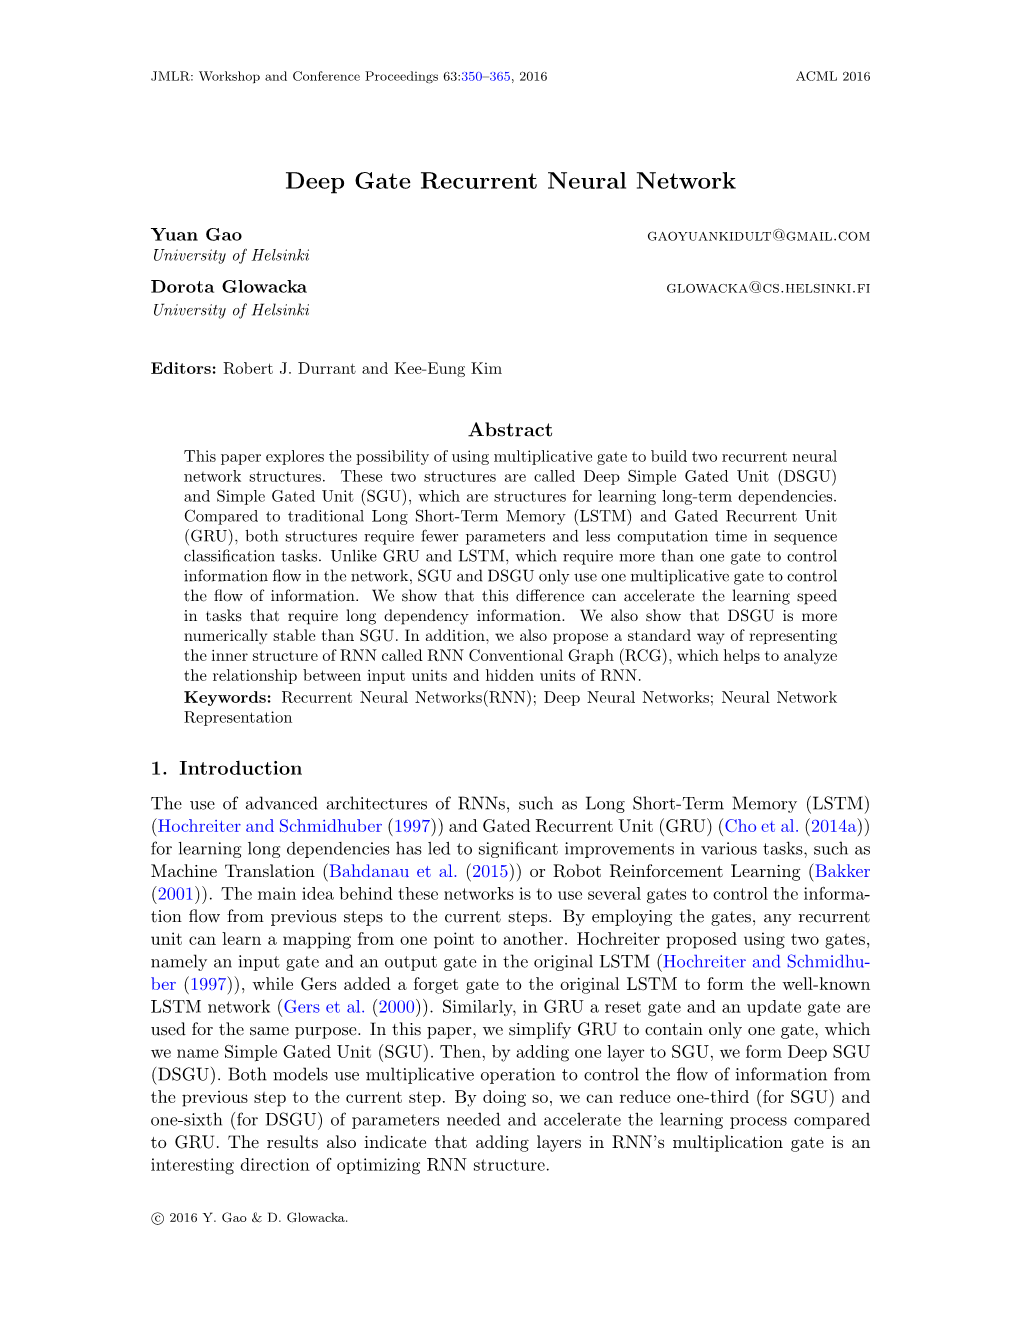 Deep Gate Recurrent Neural Network